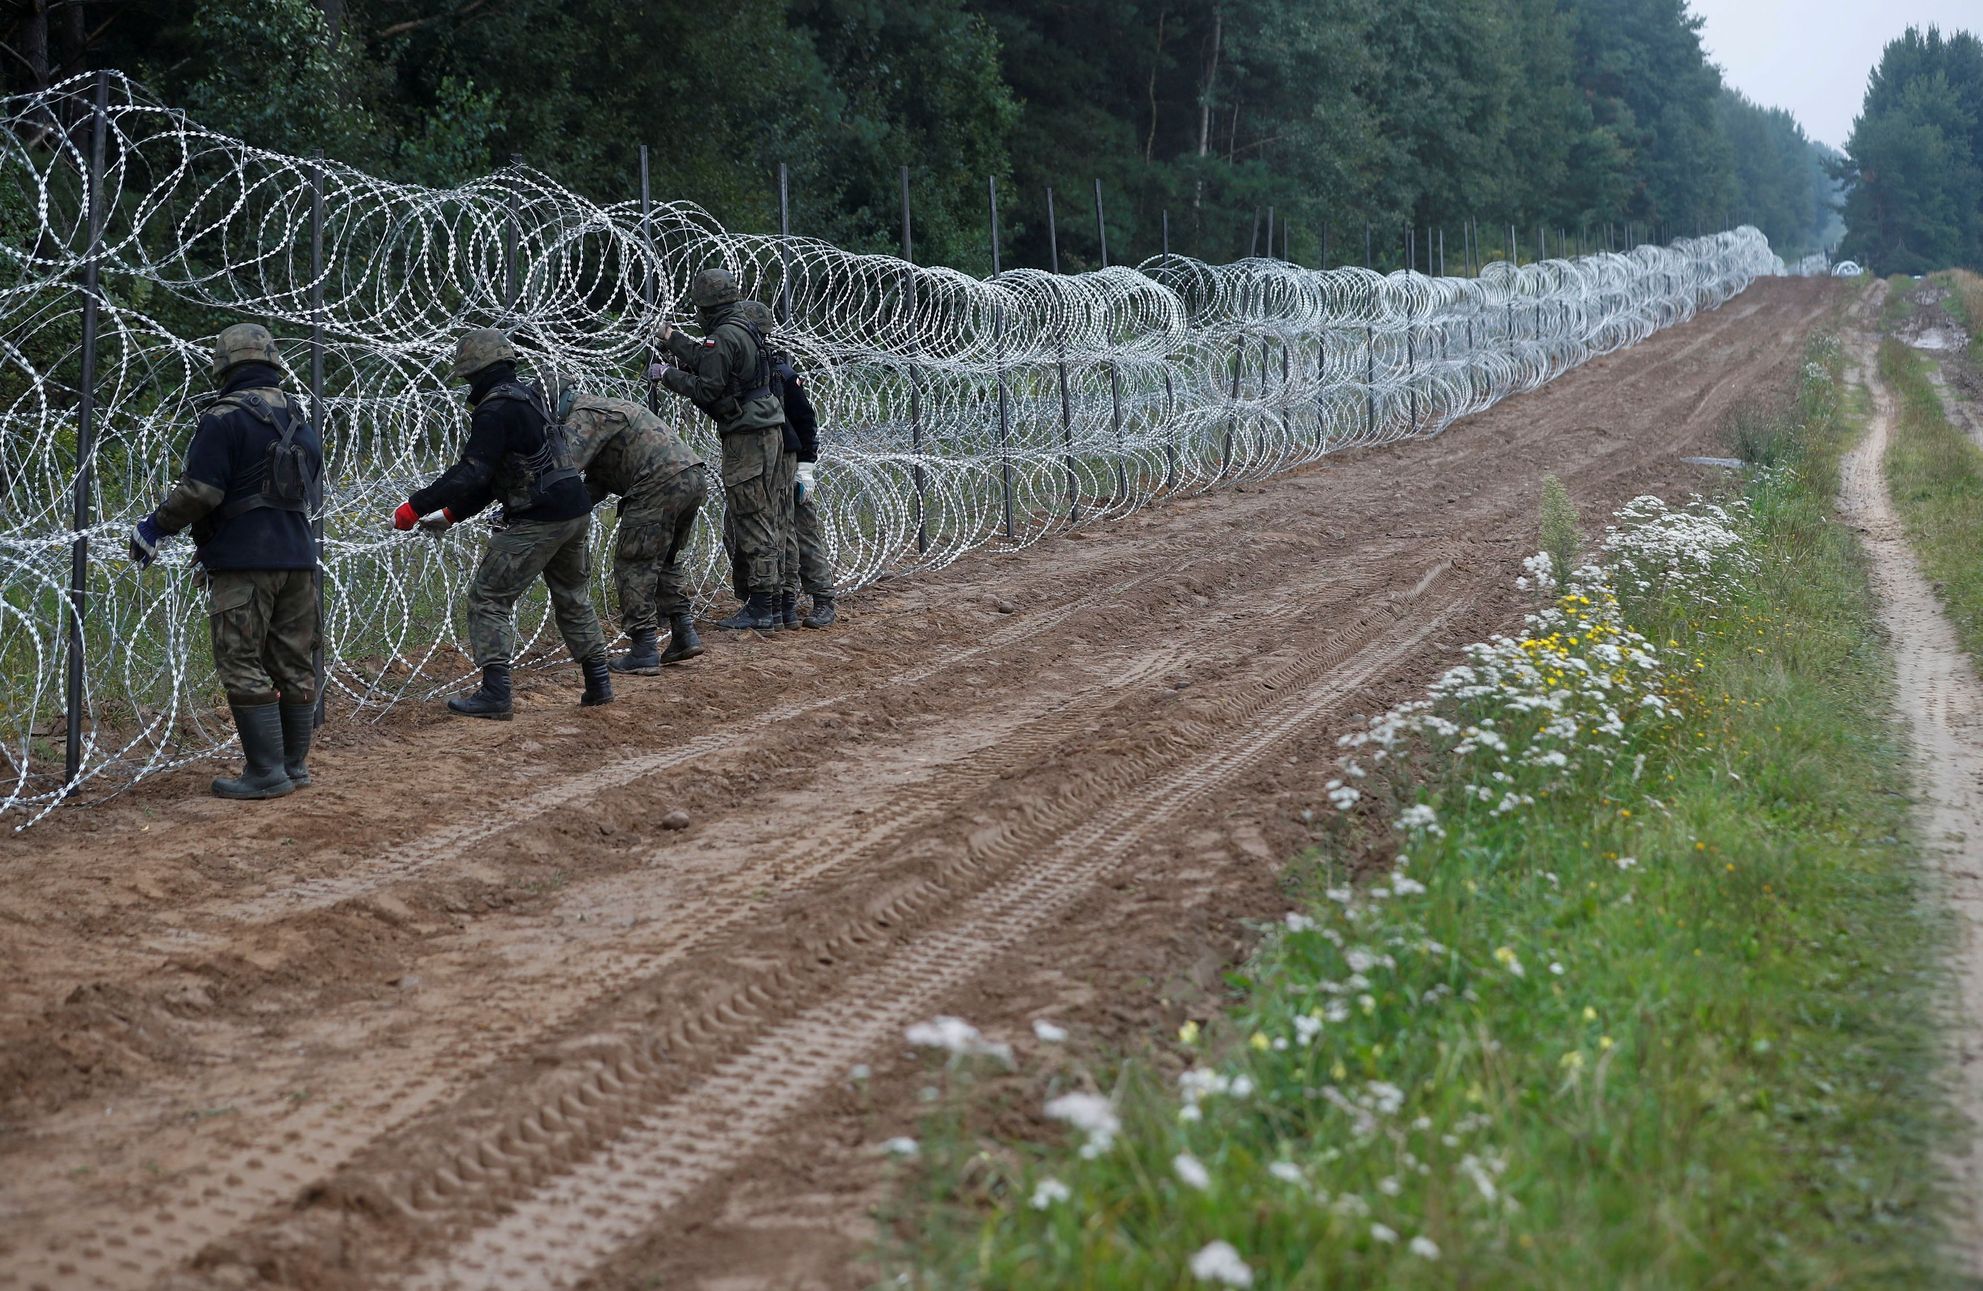 Czechy, Polska i inne kraje wzywają UE do egzekwowania barier granicznych wobec migrantów